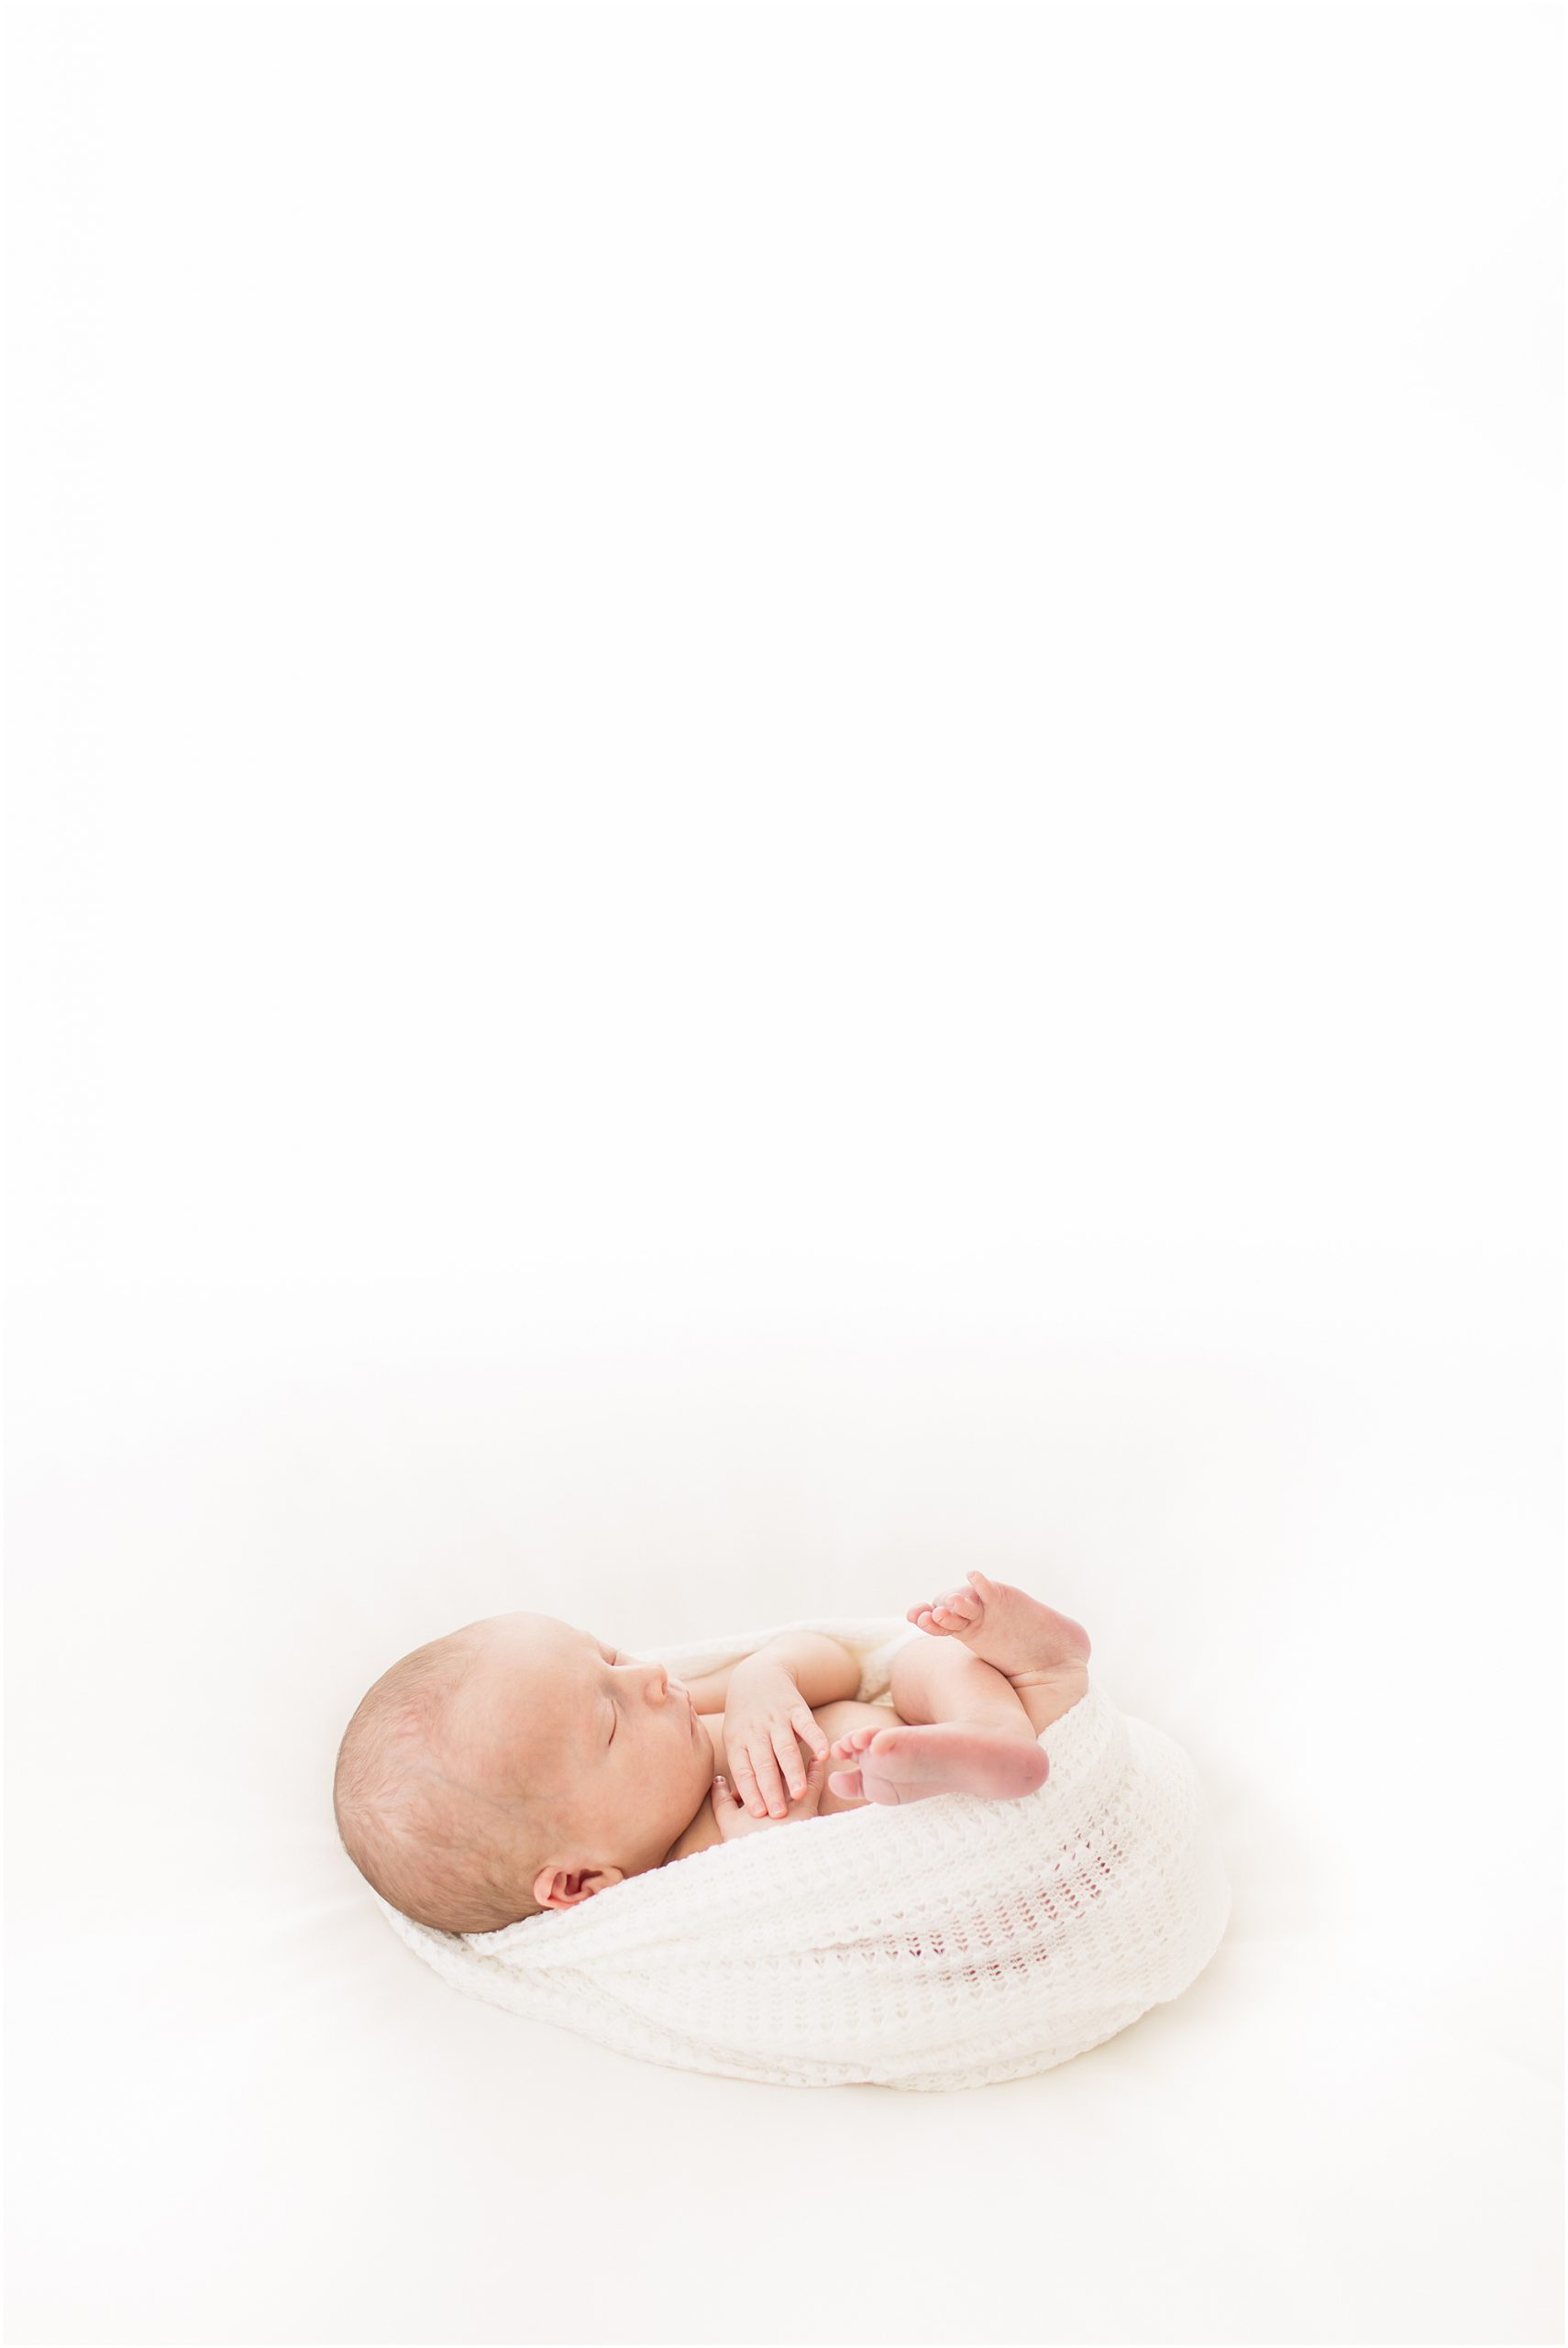 newborn photo in okc.